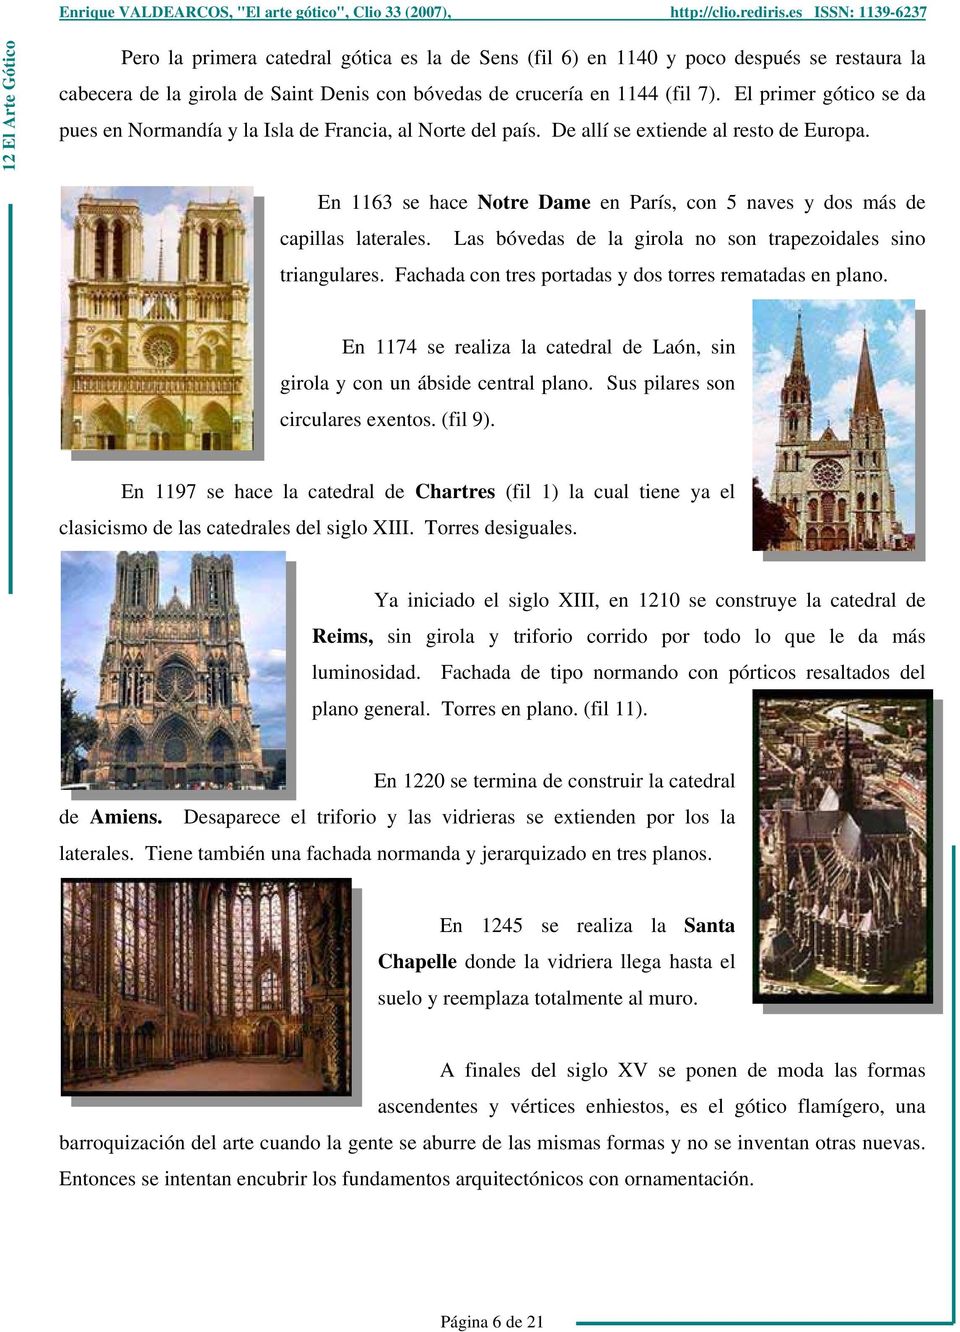 En 1163 se hace Notre Dame en París, con 5 naves y dos más de capillas laterales. Las bóvedas de la girola no son trapezoidales sino triangulares.